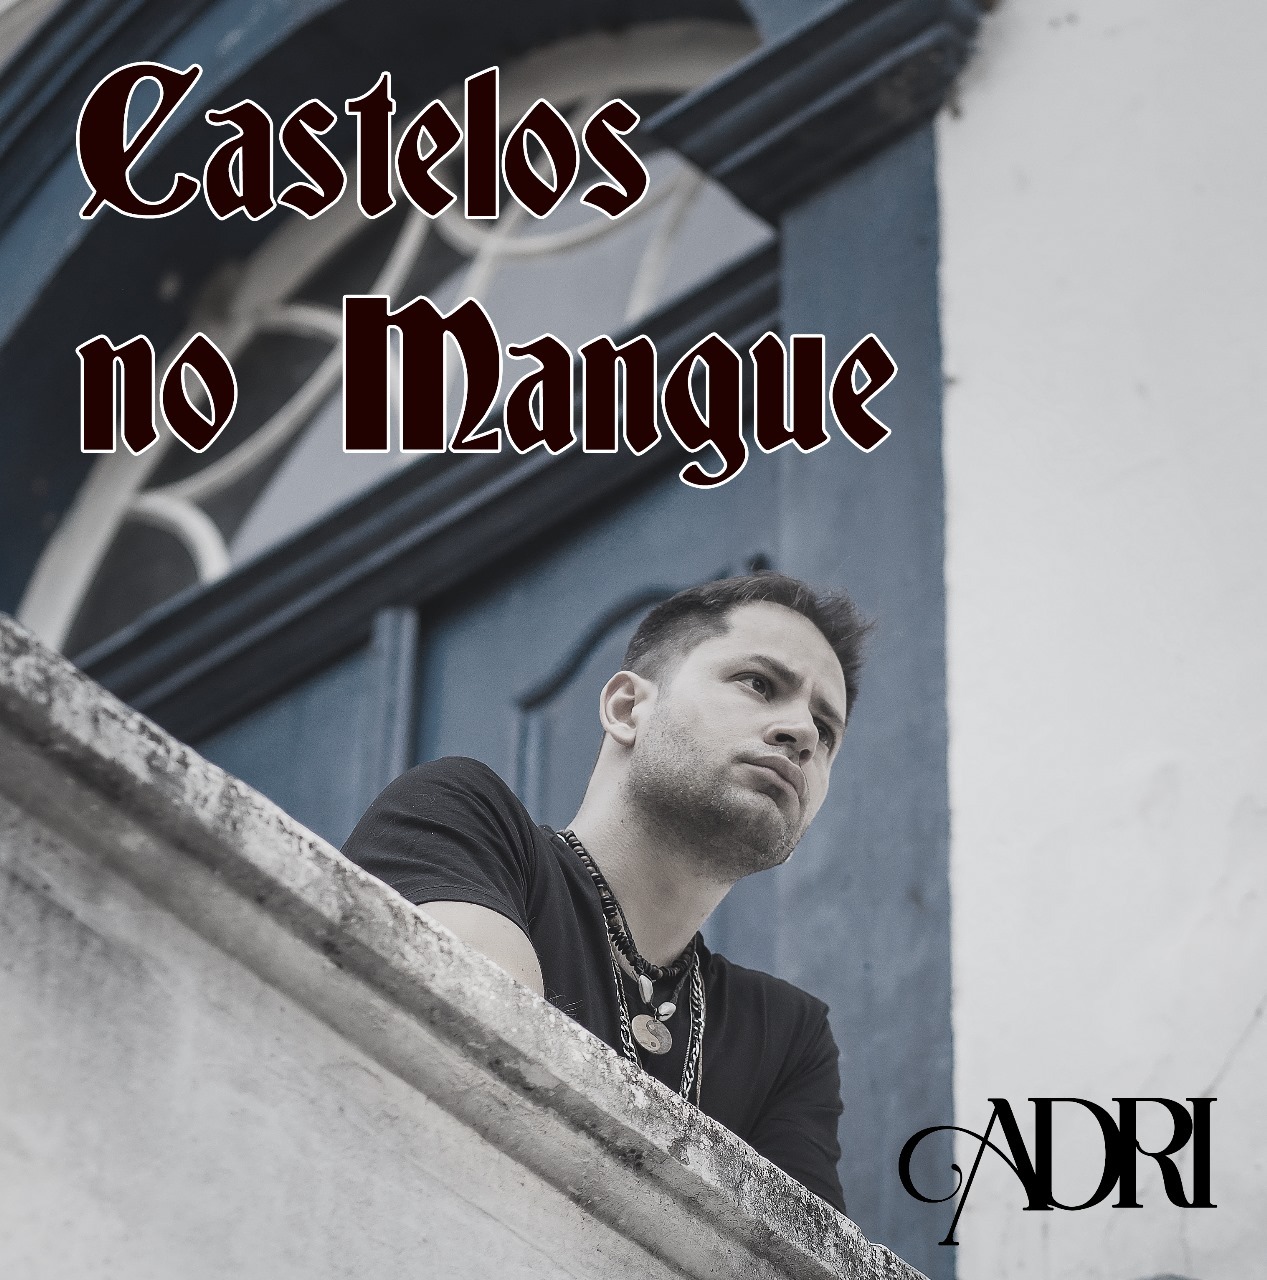 Adri lança single e videoclipe de “Castelos no Mangue” com mensagem provocante e inteligente